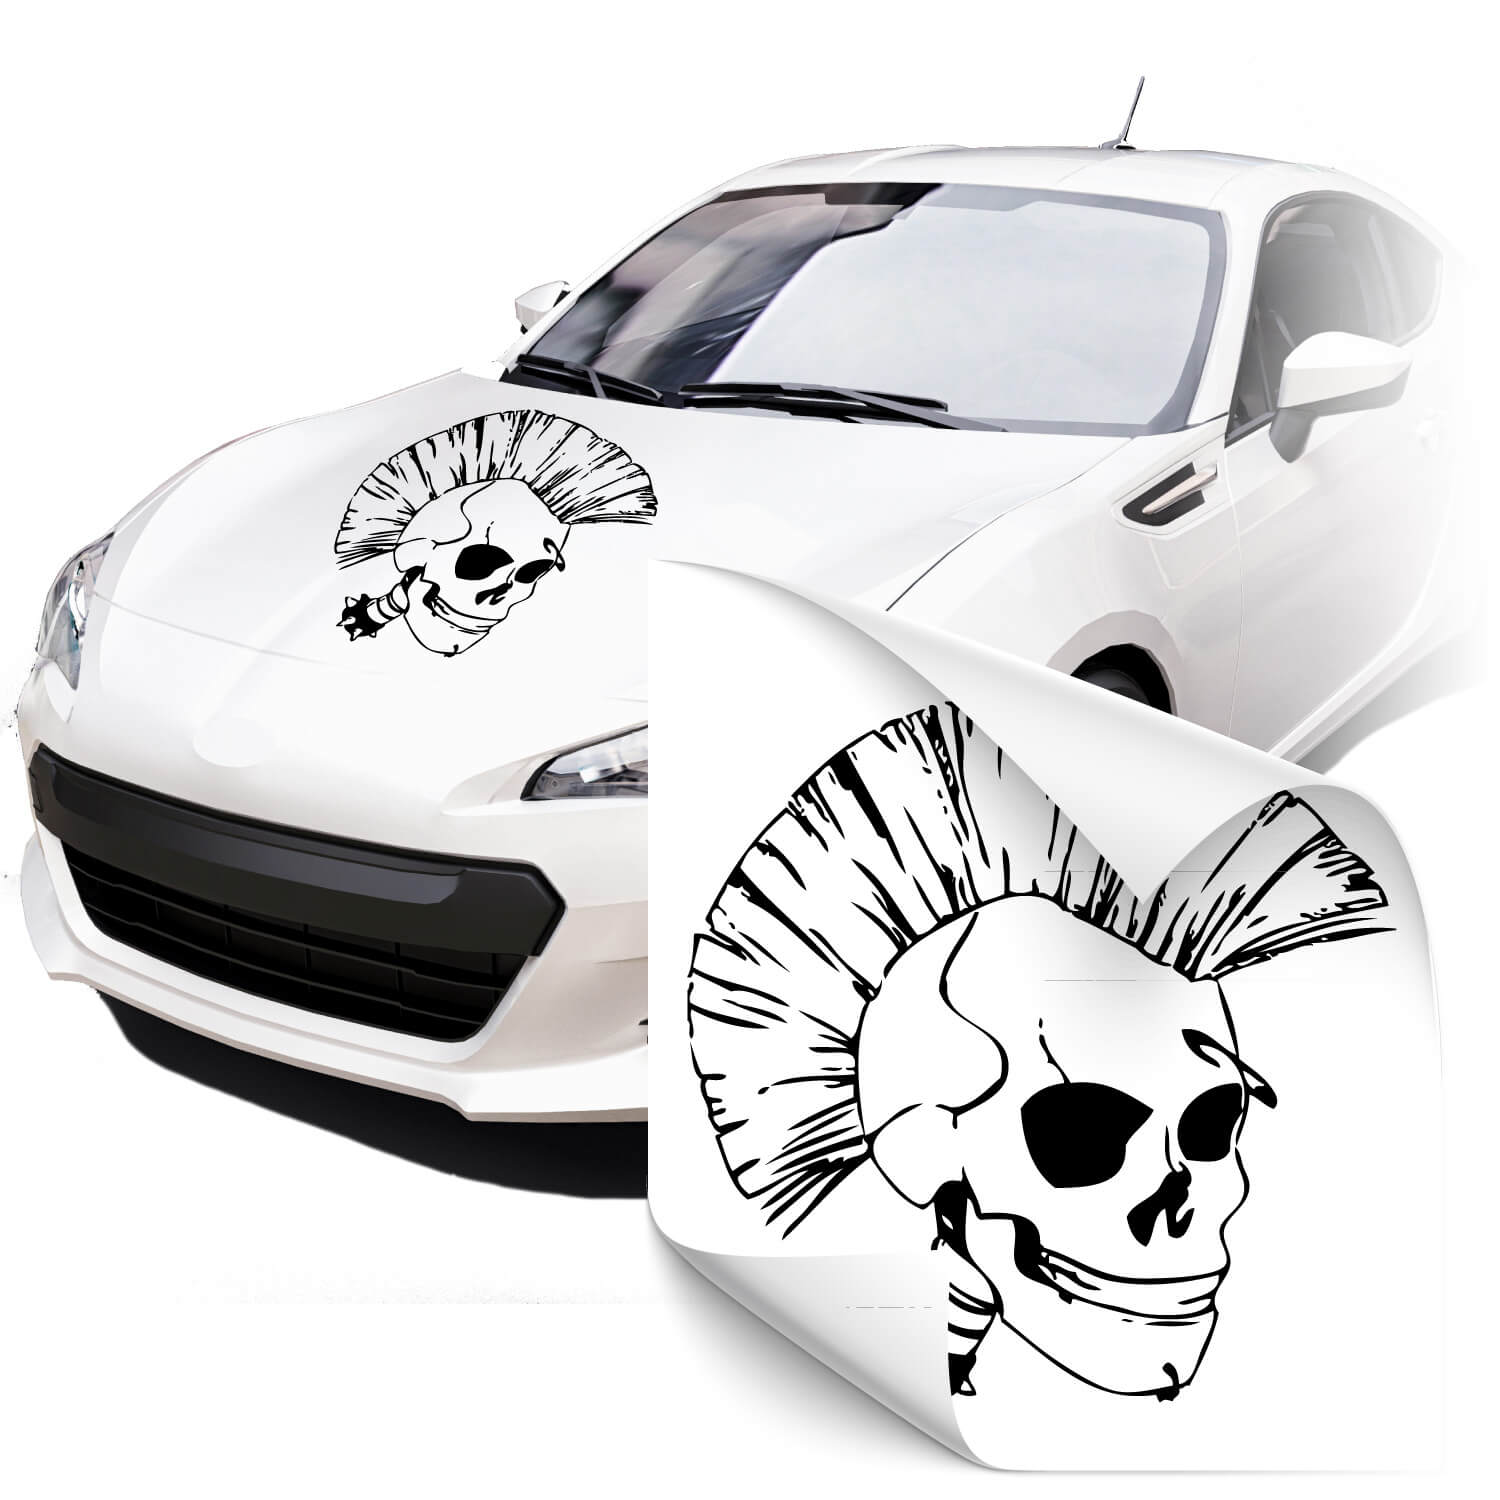 Punkrocker Totenkopf Car Tuning Sticker von Klebe-X jetzt Online kaufen!